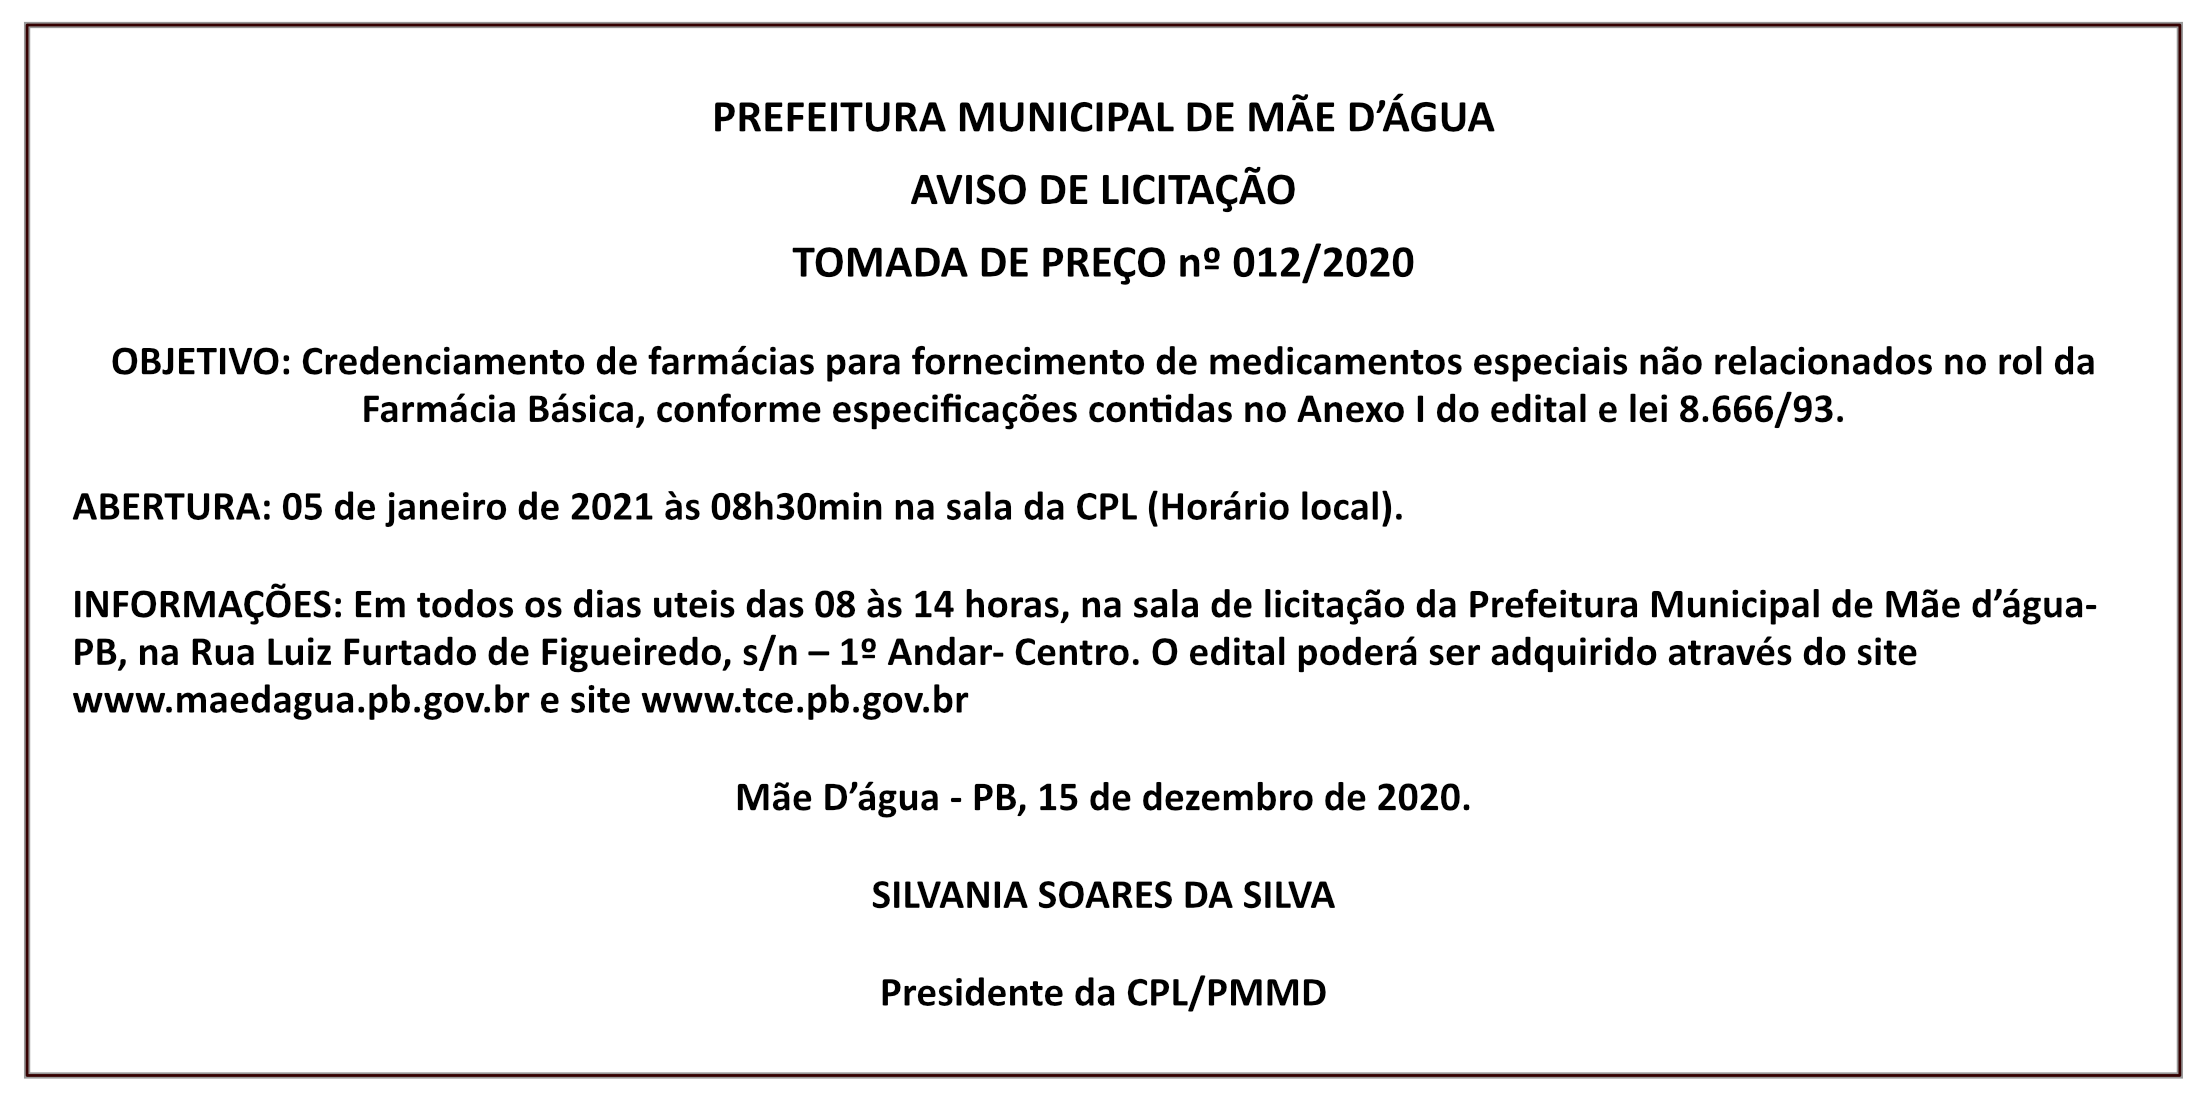 PREFEITURA MUNICIPAL DE MÃE D’ÁGUA – AVISO DE LICITAÇÃO – TOMADA DE PREÇO Nº 012/2020